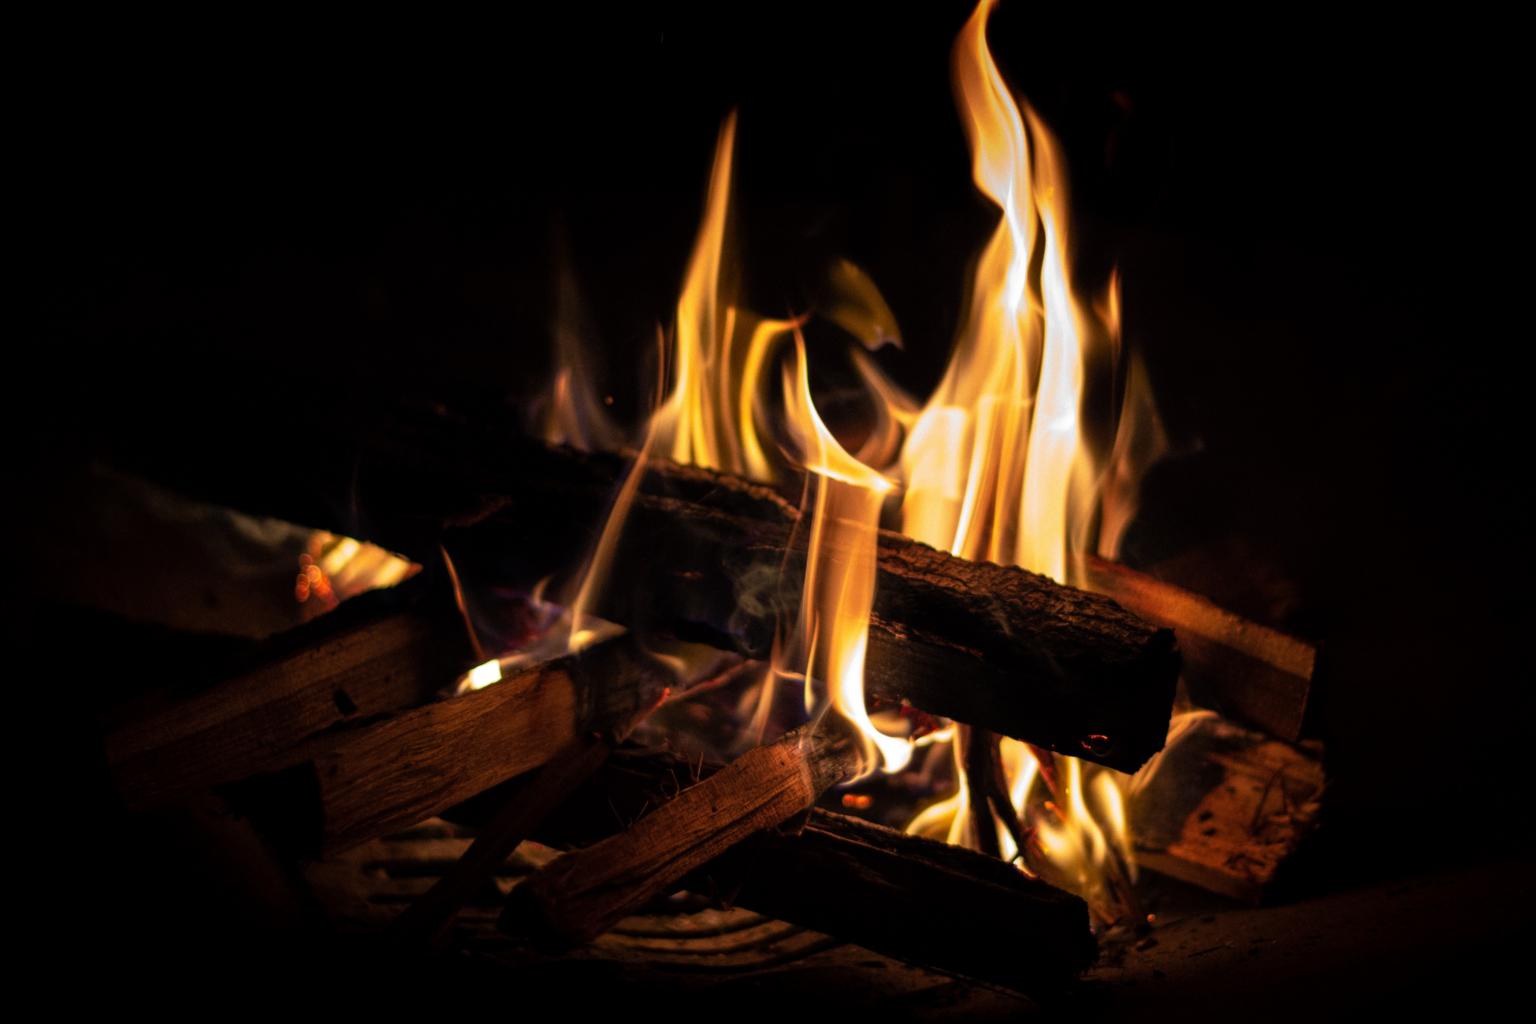 Holz brennt im Ofen (c) Foto von Maurice Sahl auf Unsplash